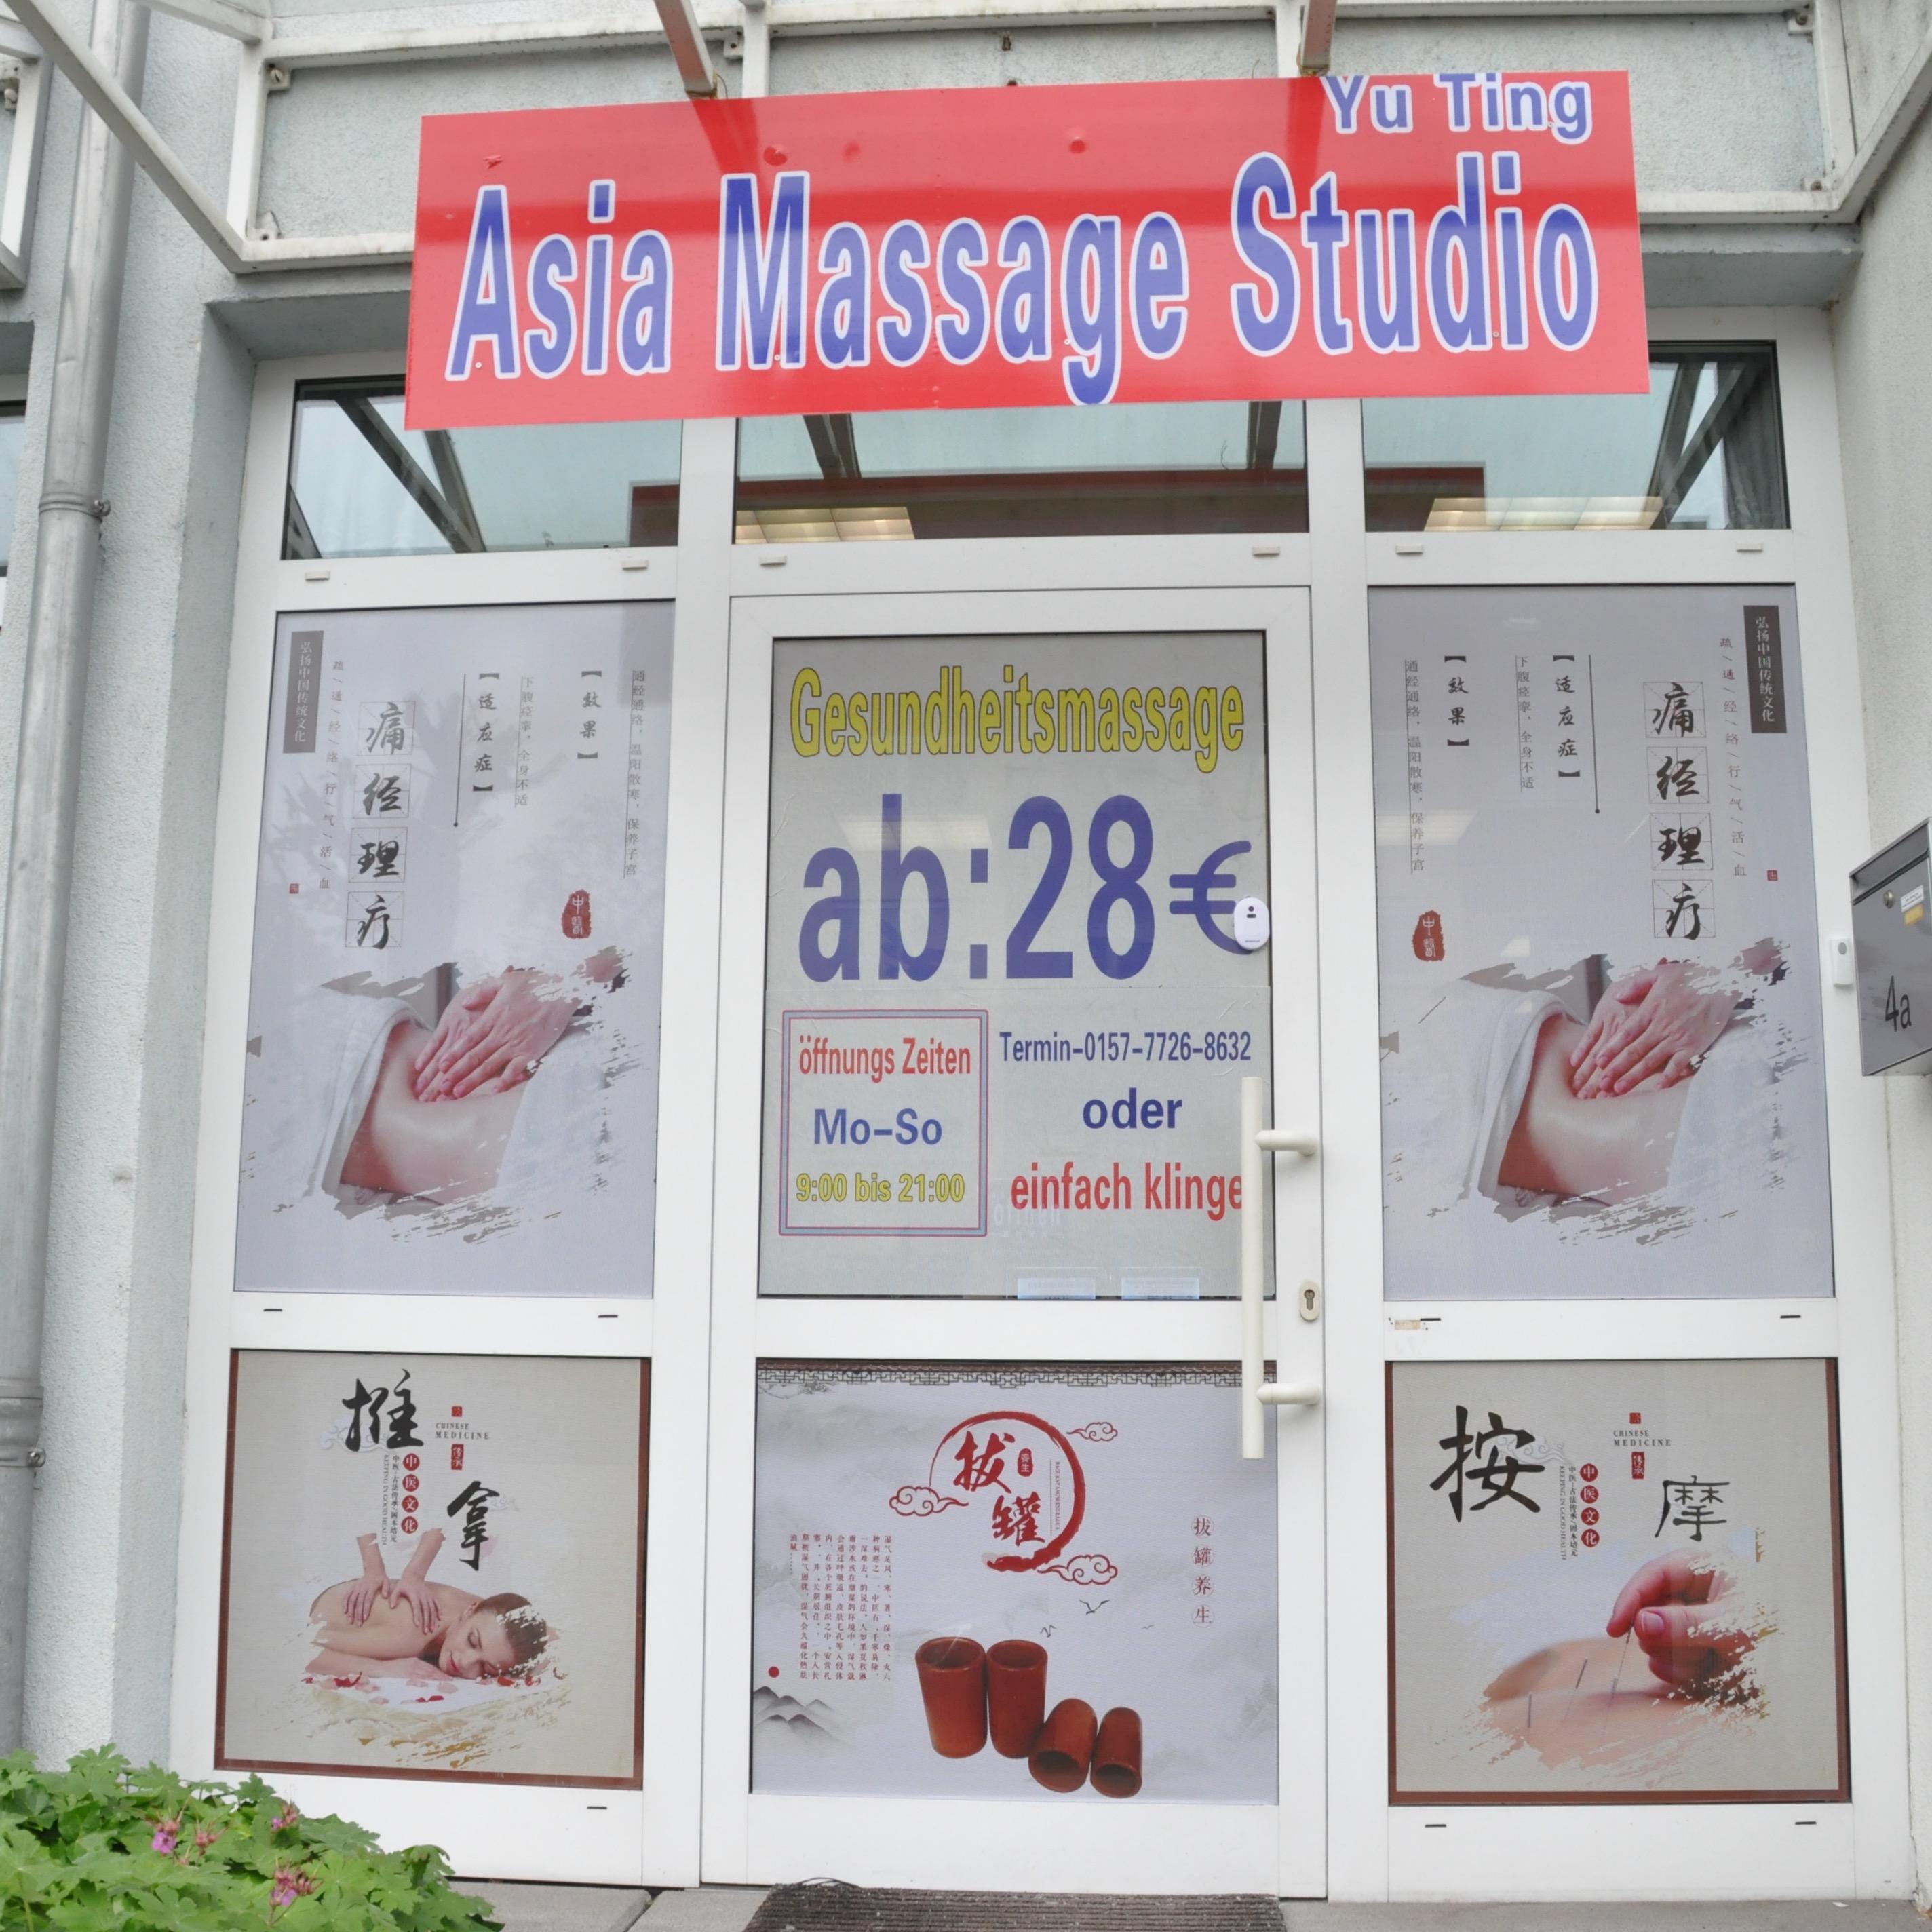 Massage duisburg chinesische 